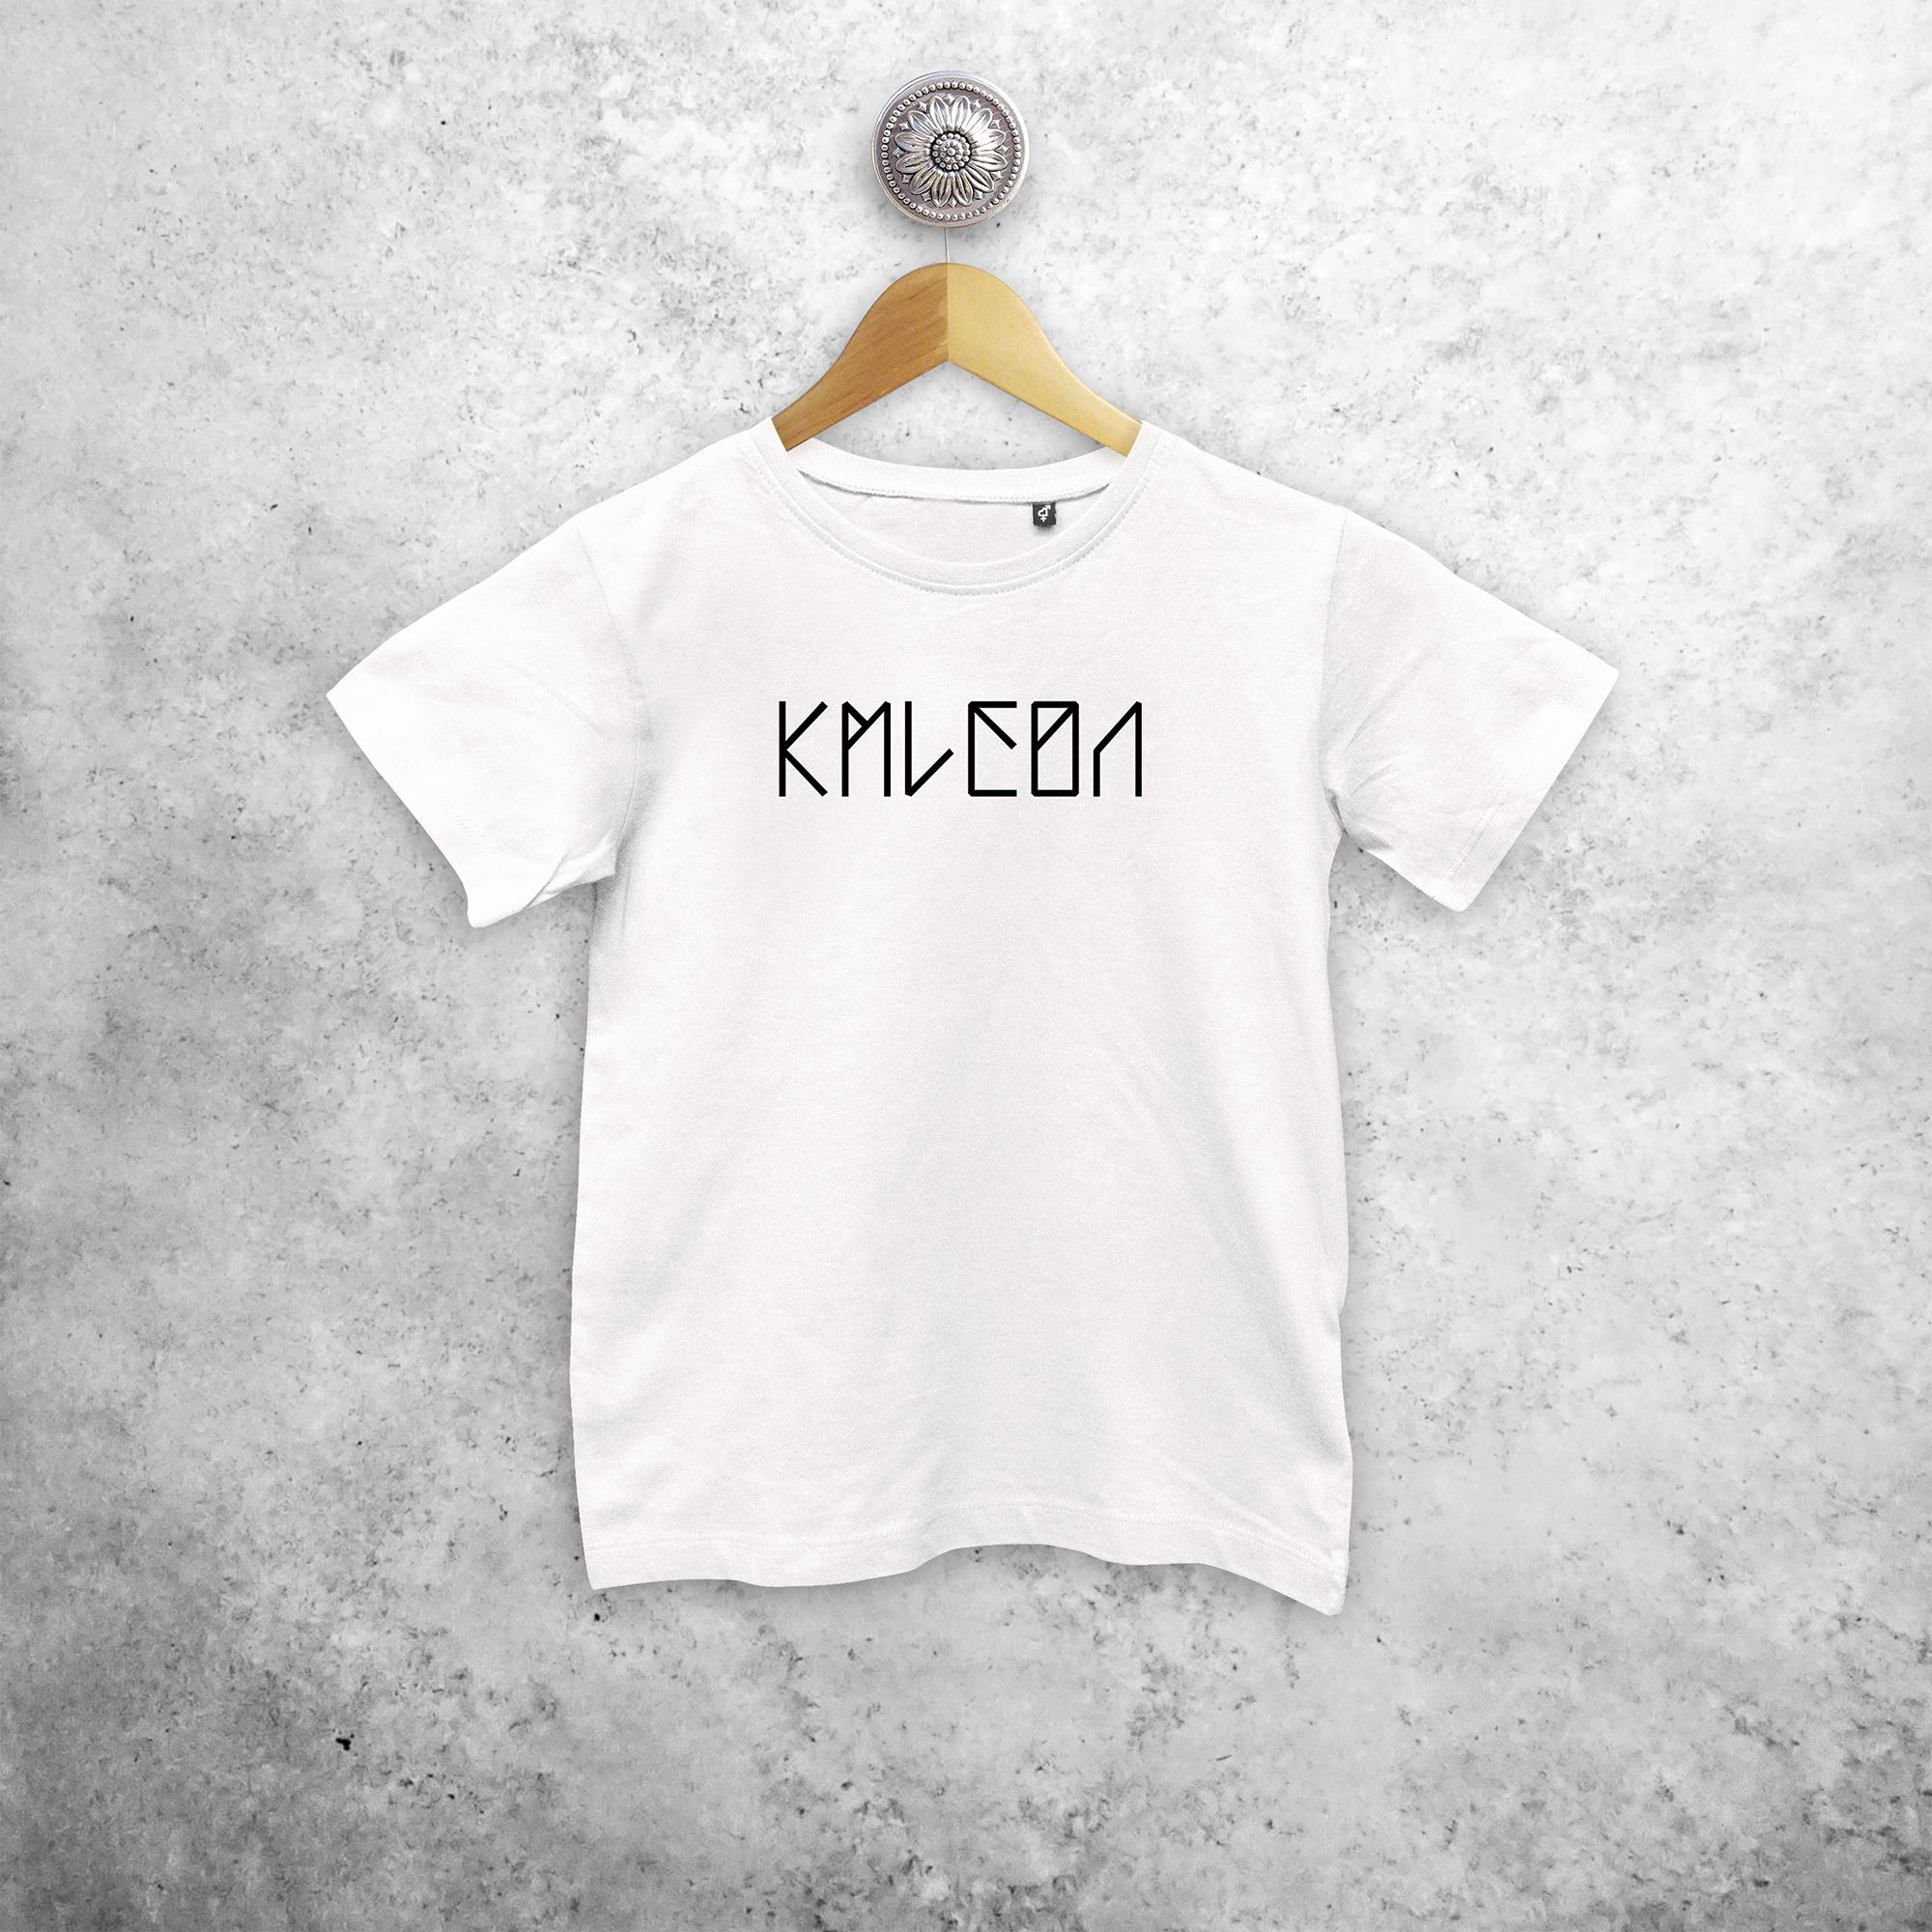 KMLeon kids shortsleeve shirt